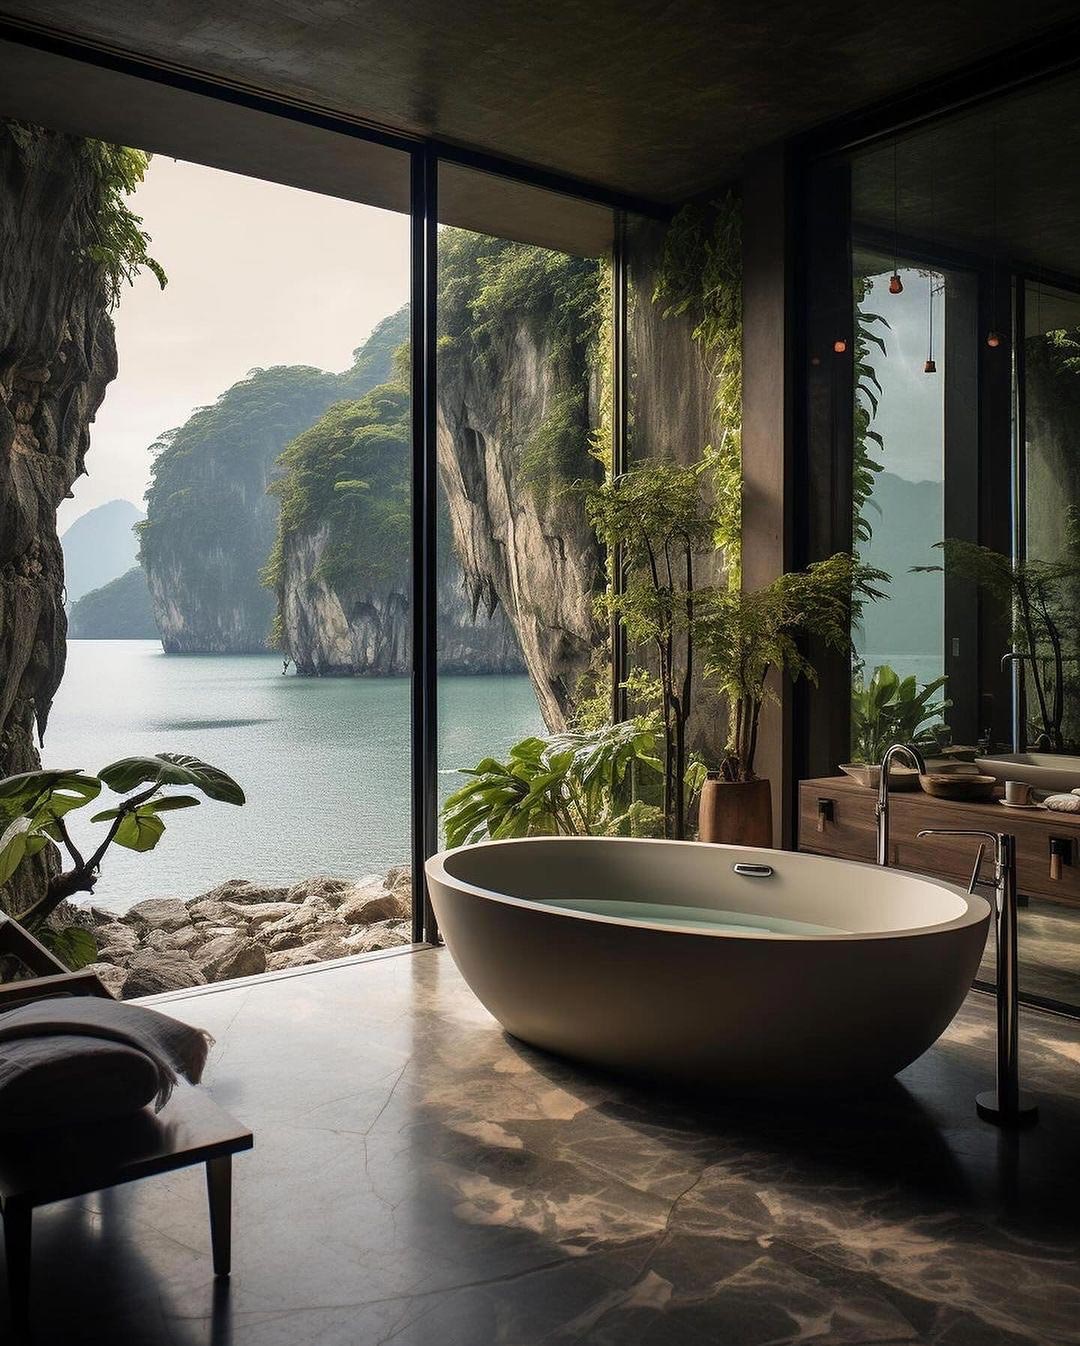 Spa Like Bathroom Private Coastal Views